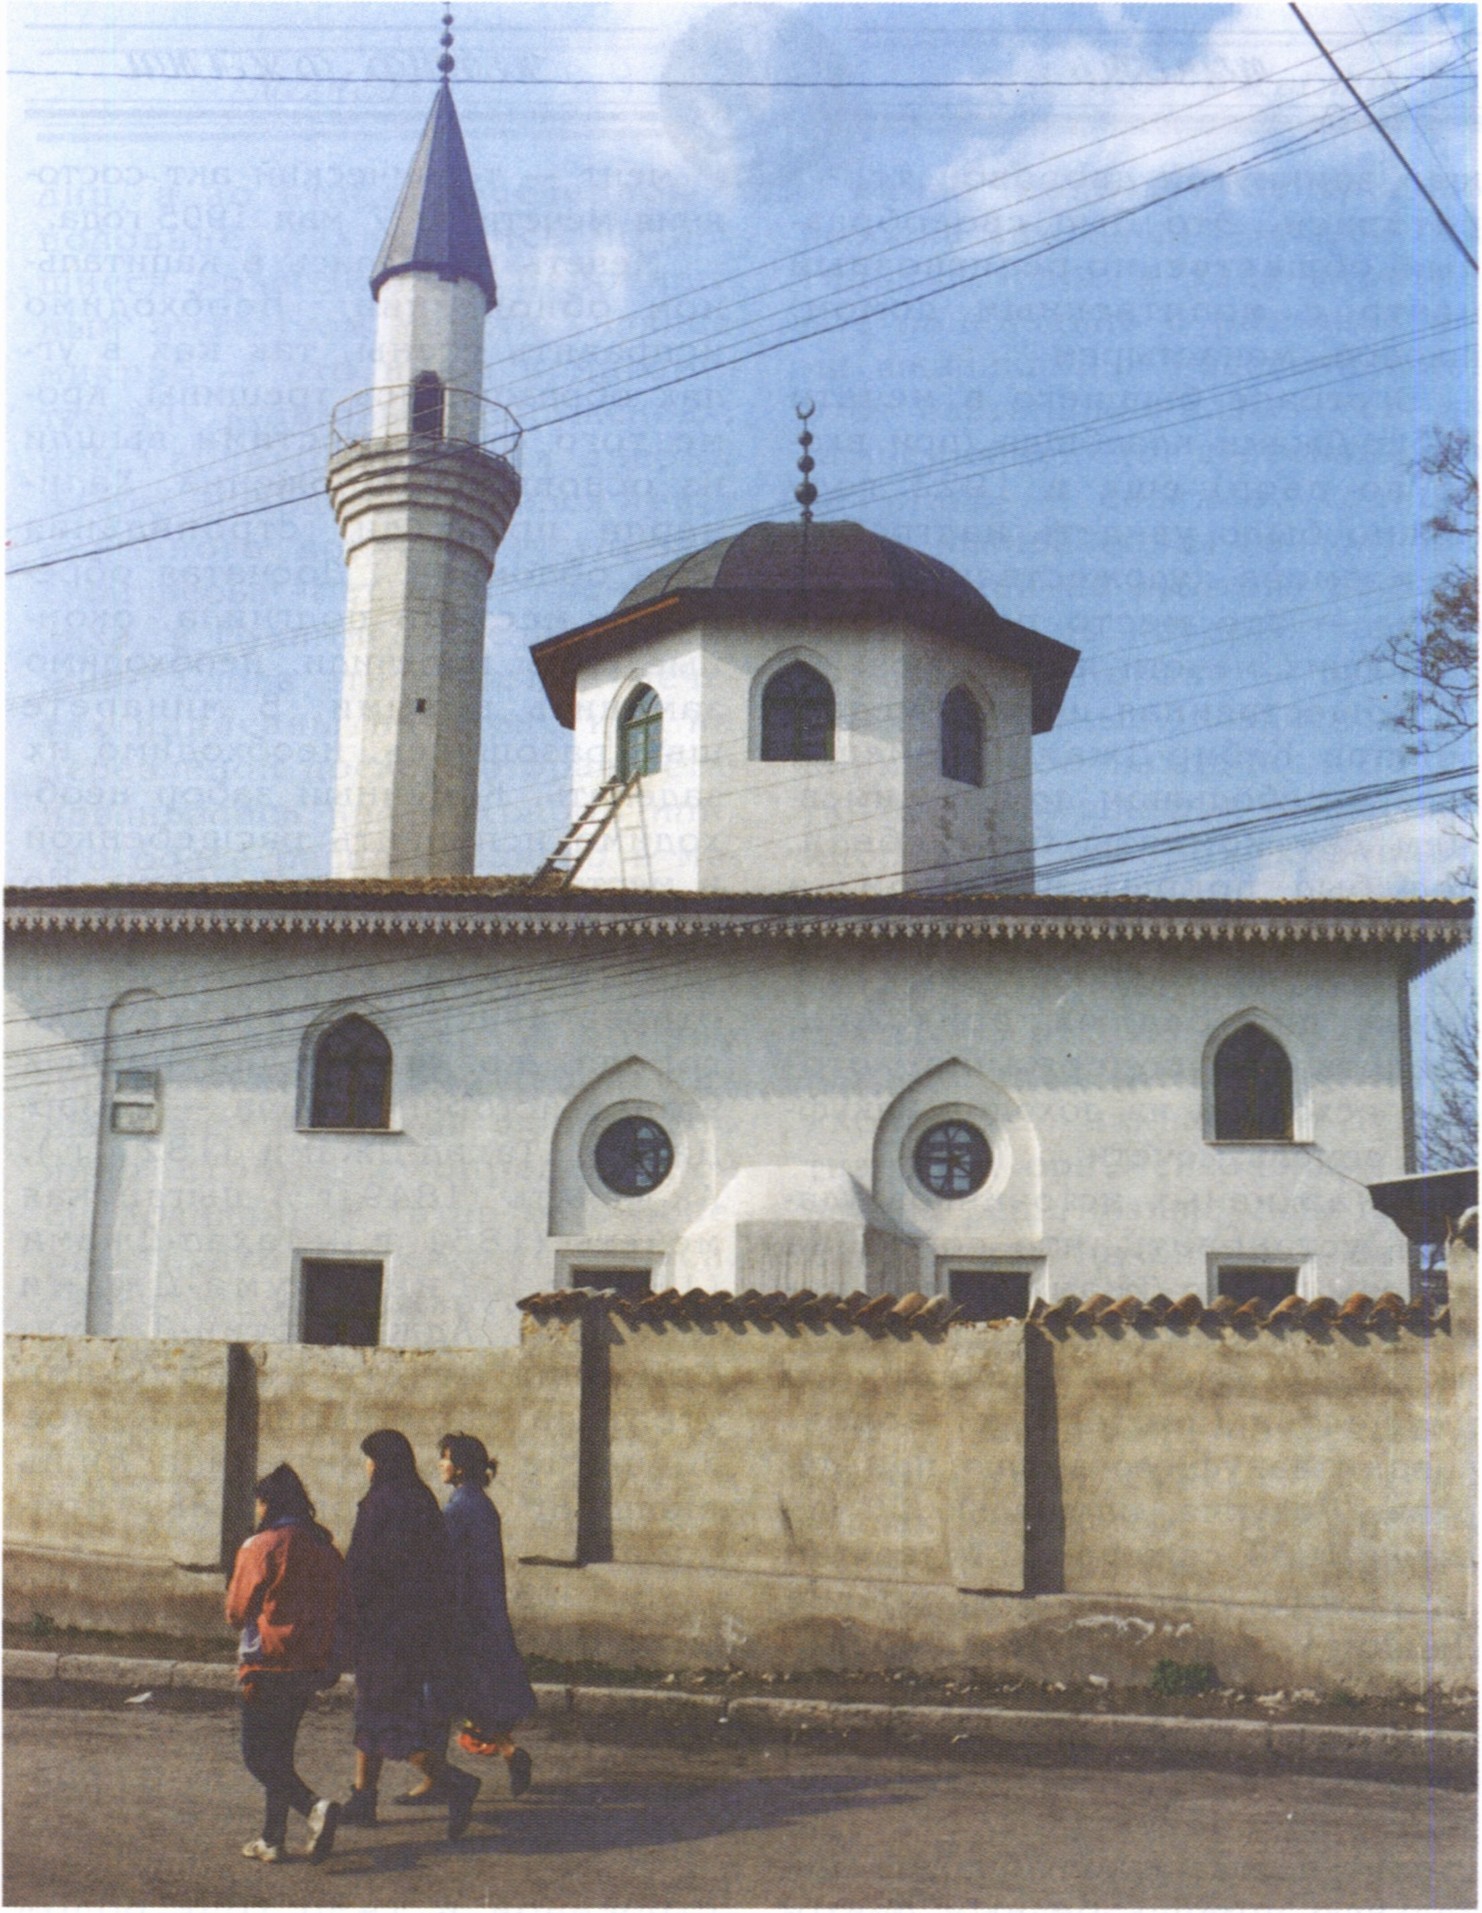 Мечеть Кебир-Джами после реконструкции. Главный фасад. Автор проекта — Ш.У. Халилов. 1991 г